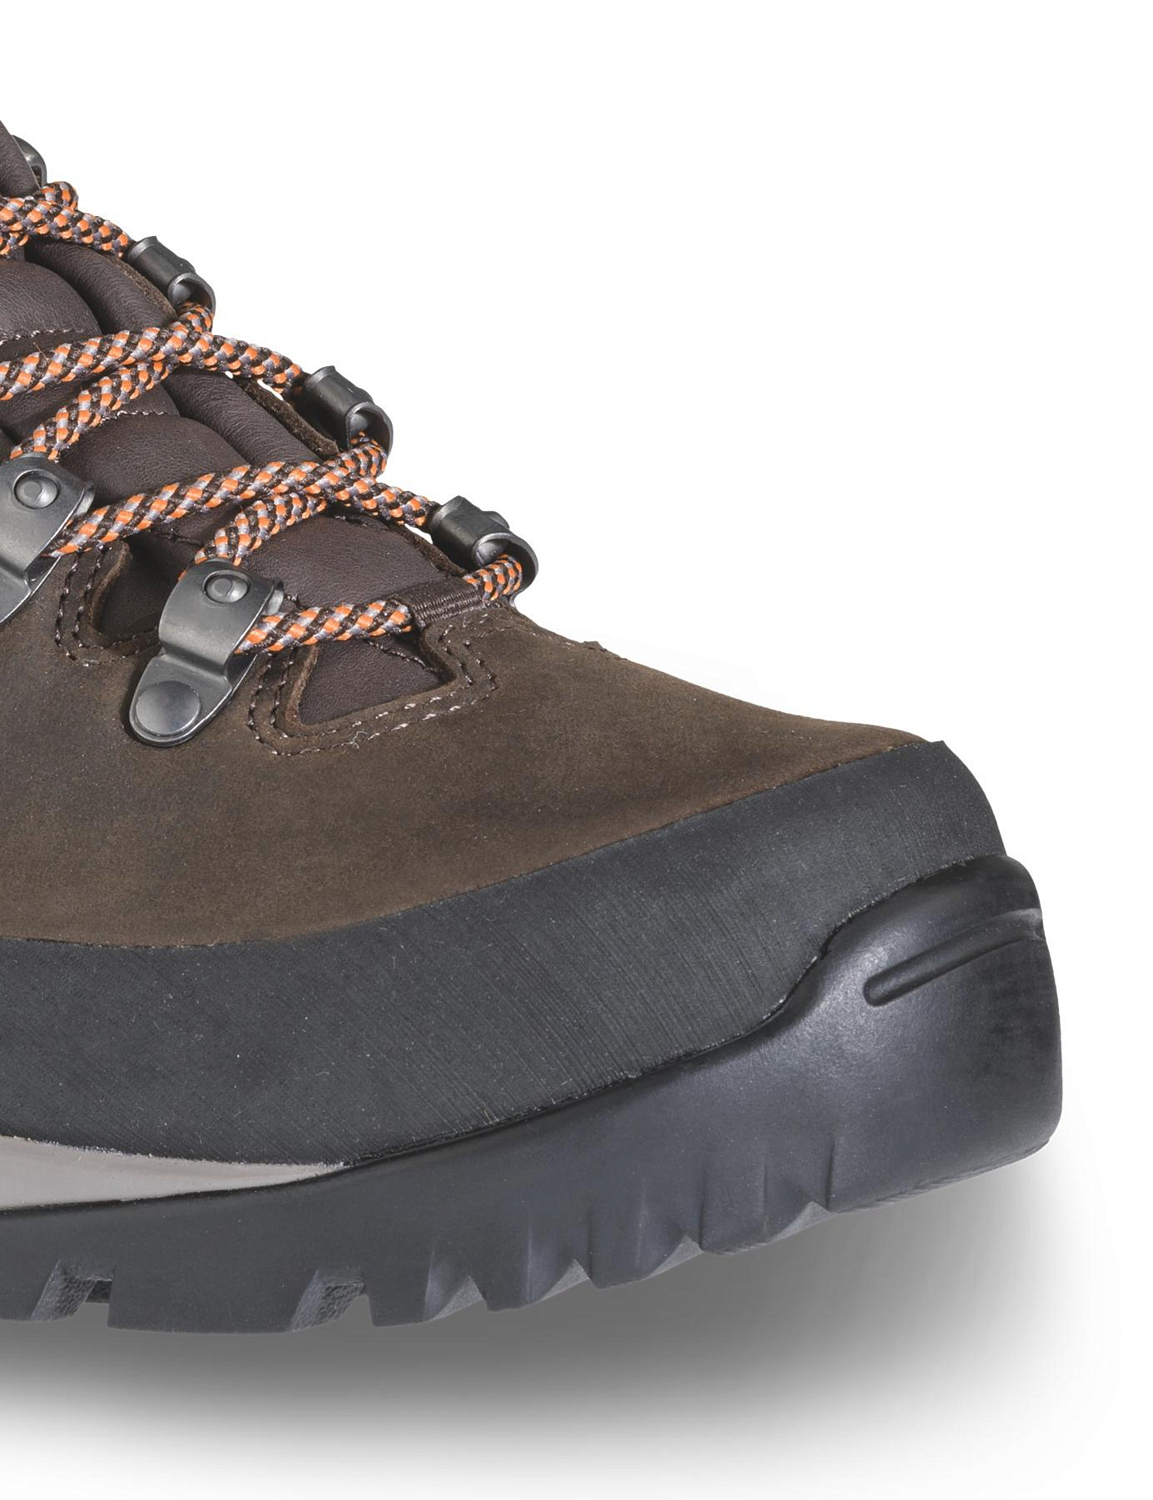 Треккинговые ботинки Dolomite Zermatt Plus GTX Dark Brown